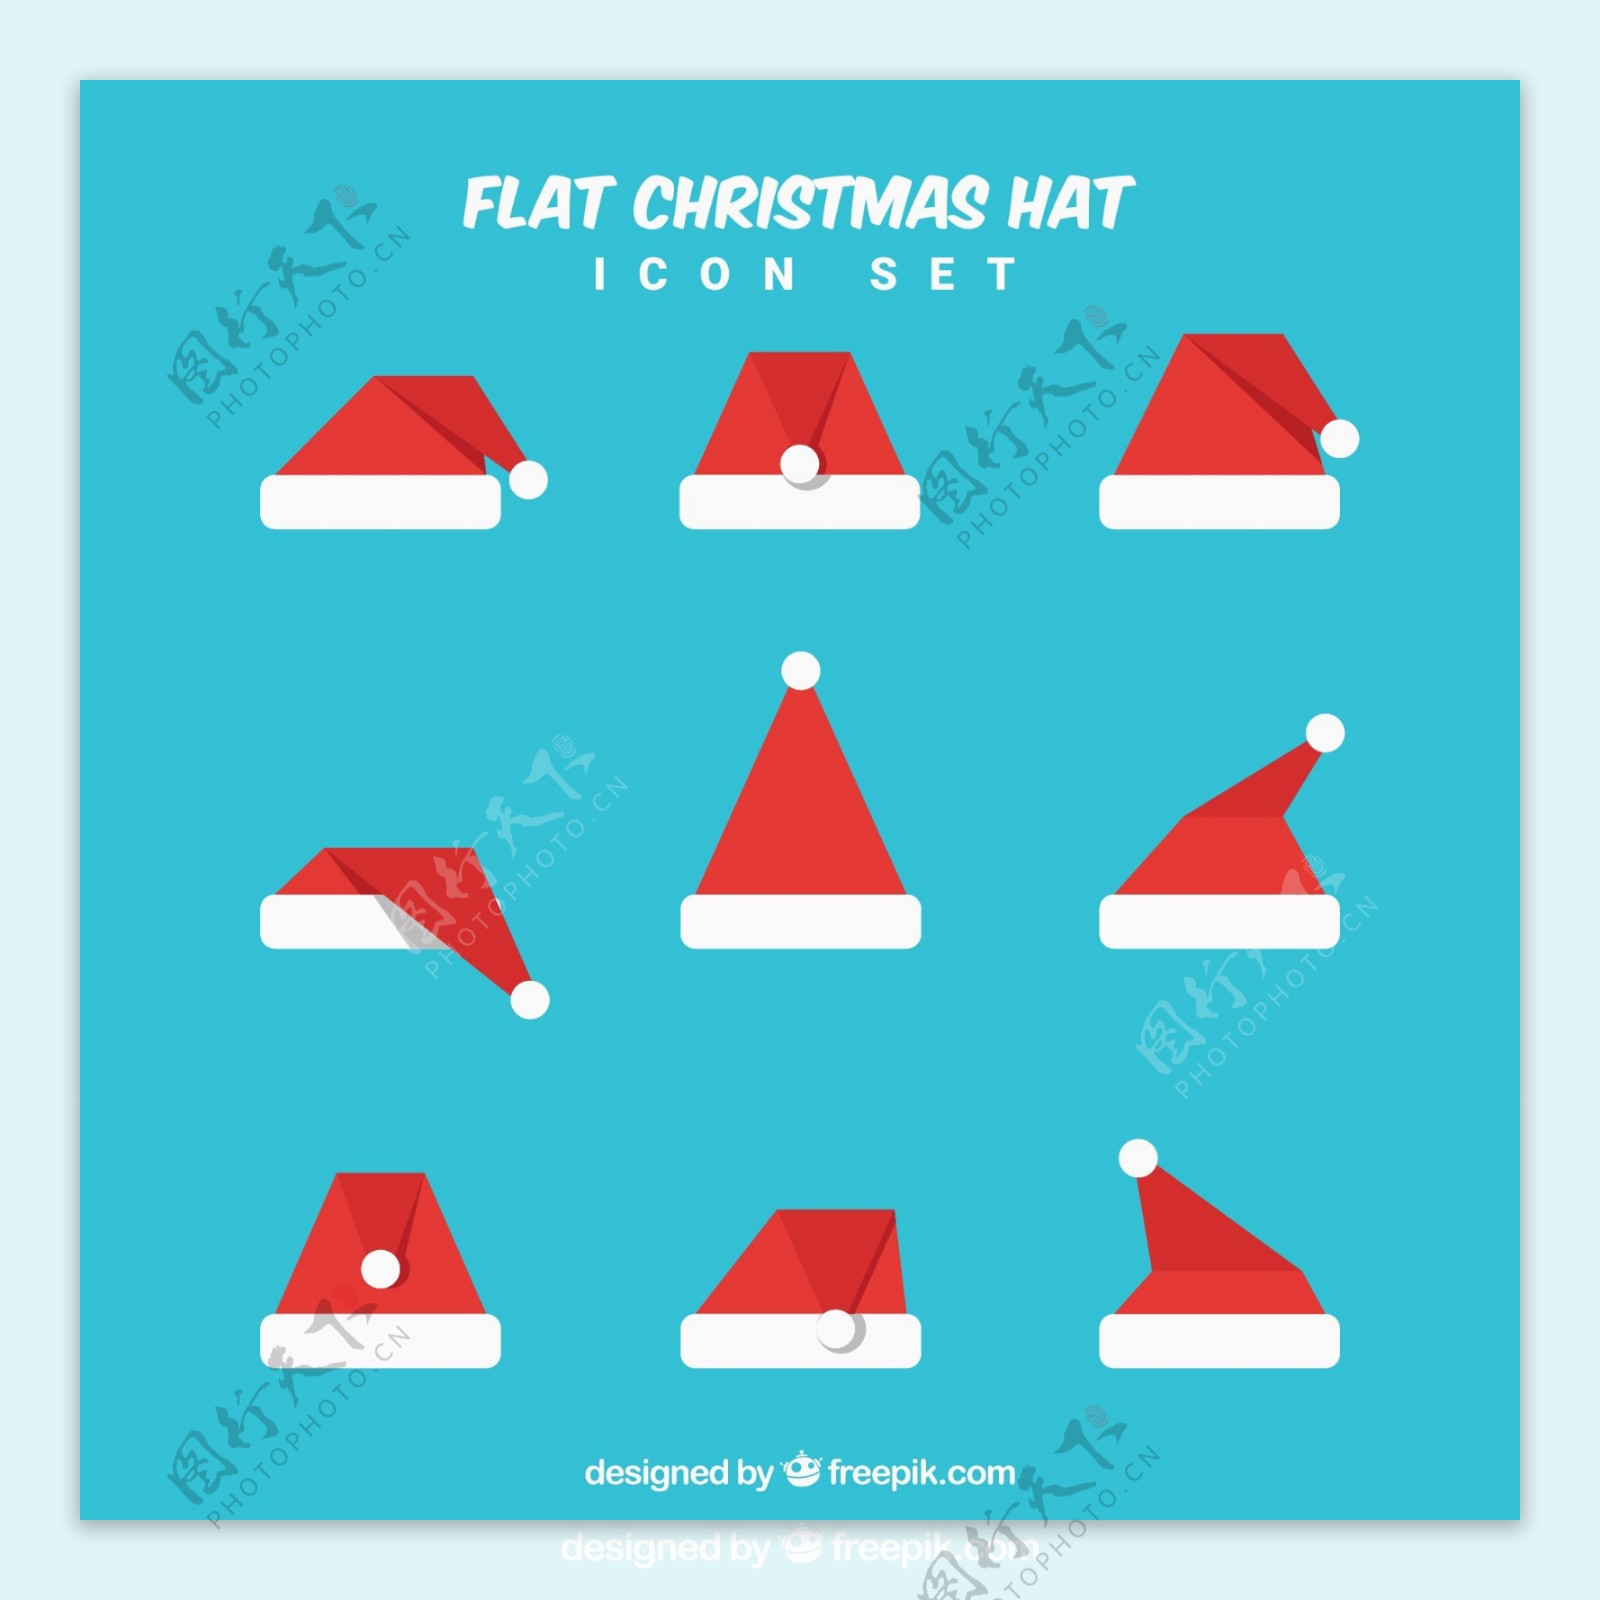 扁平化圣诞帽